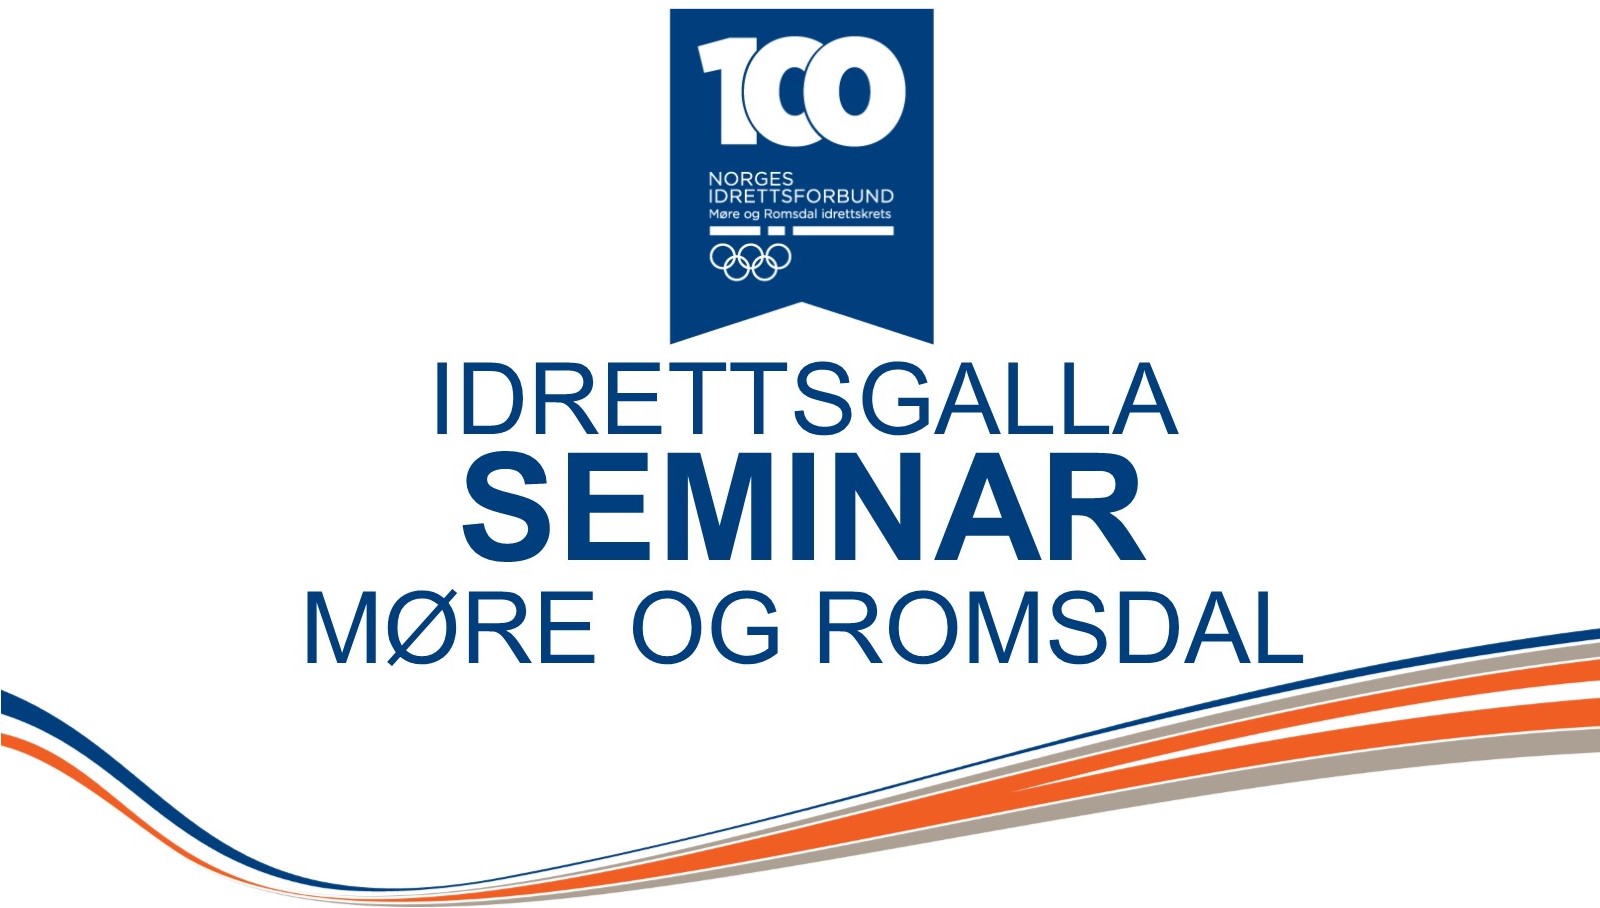 Seminar logo.jpg